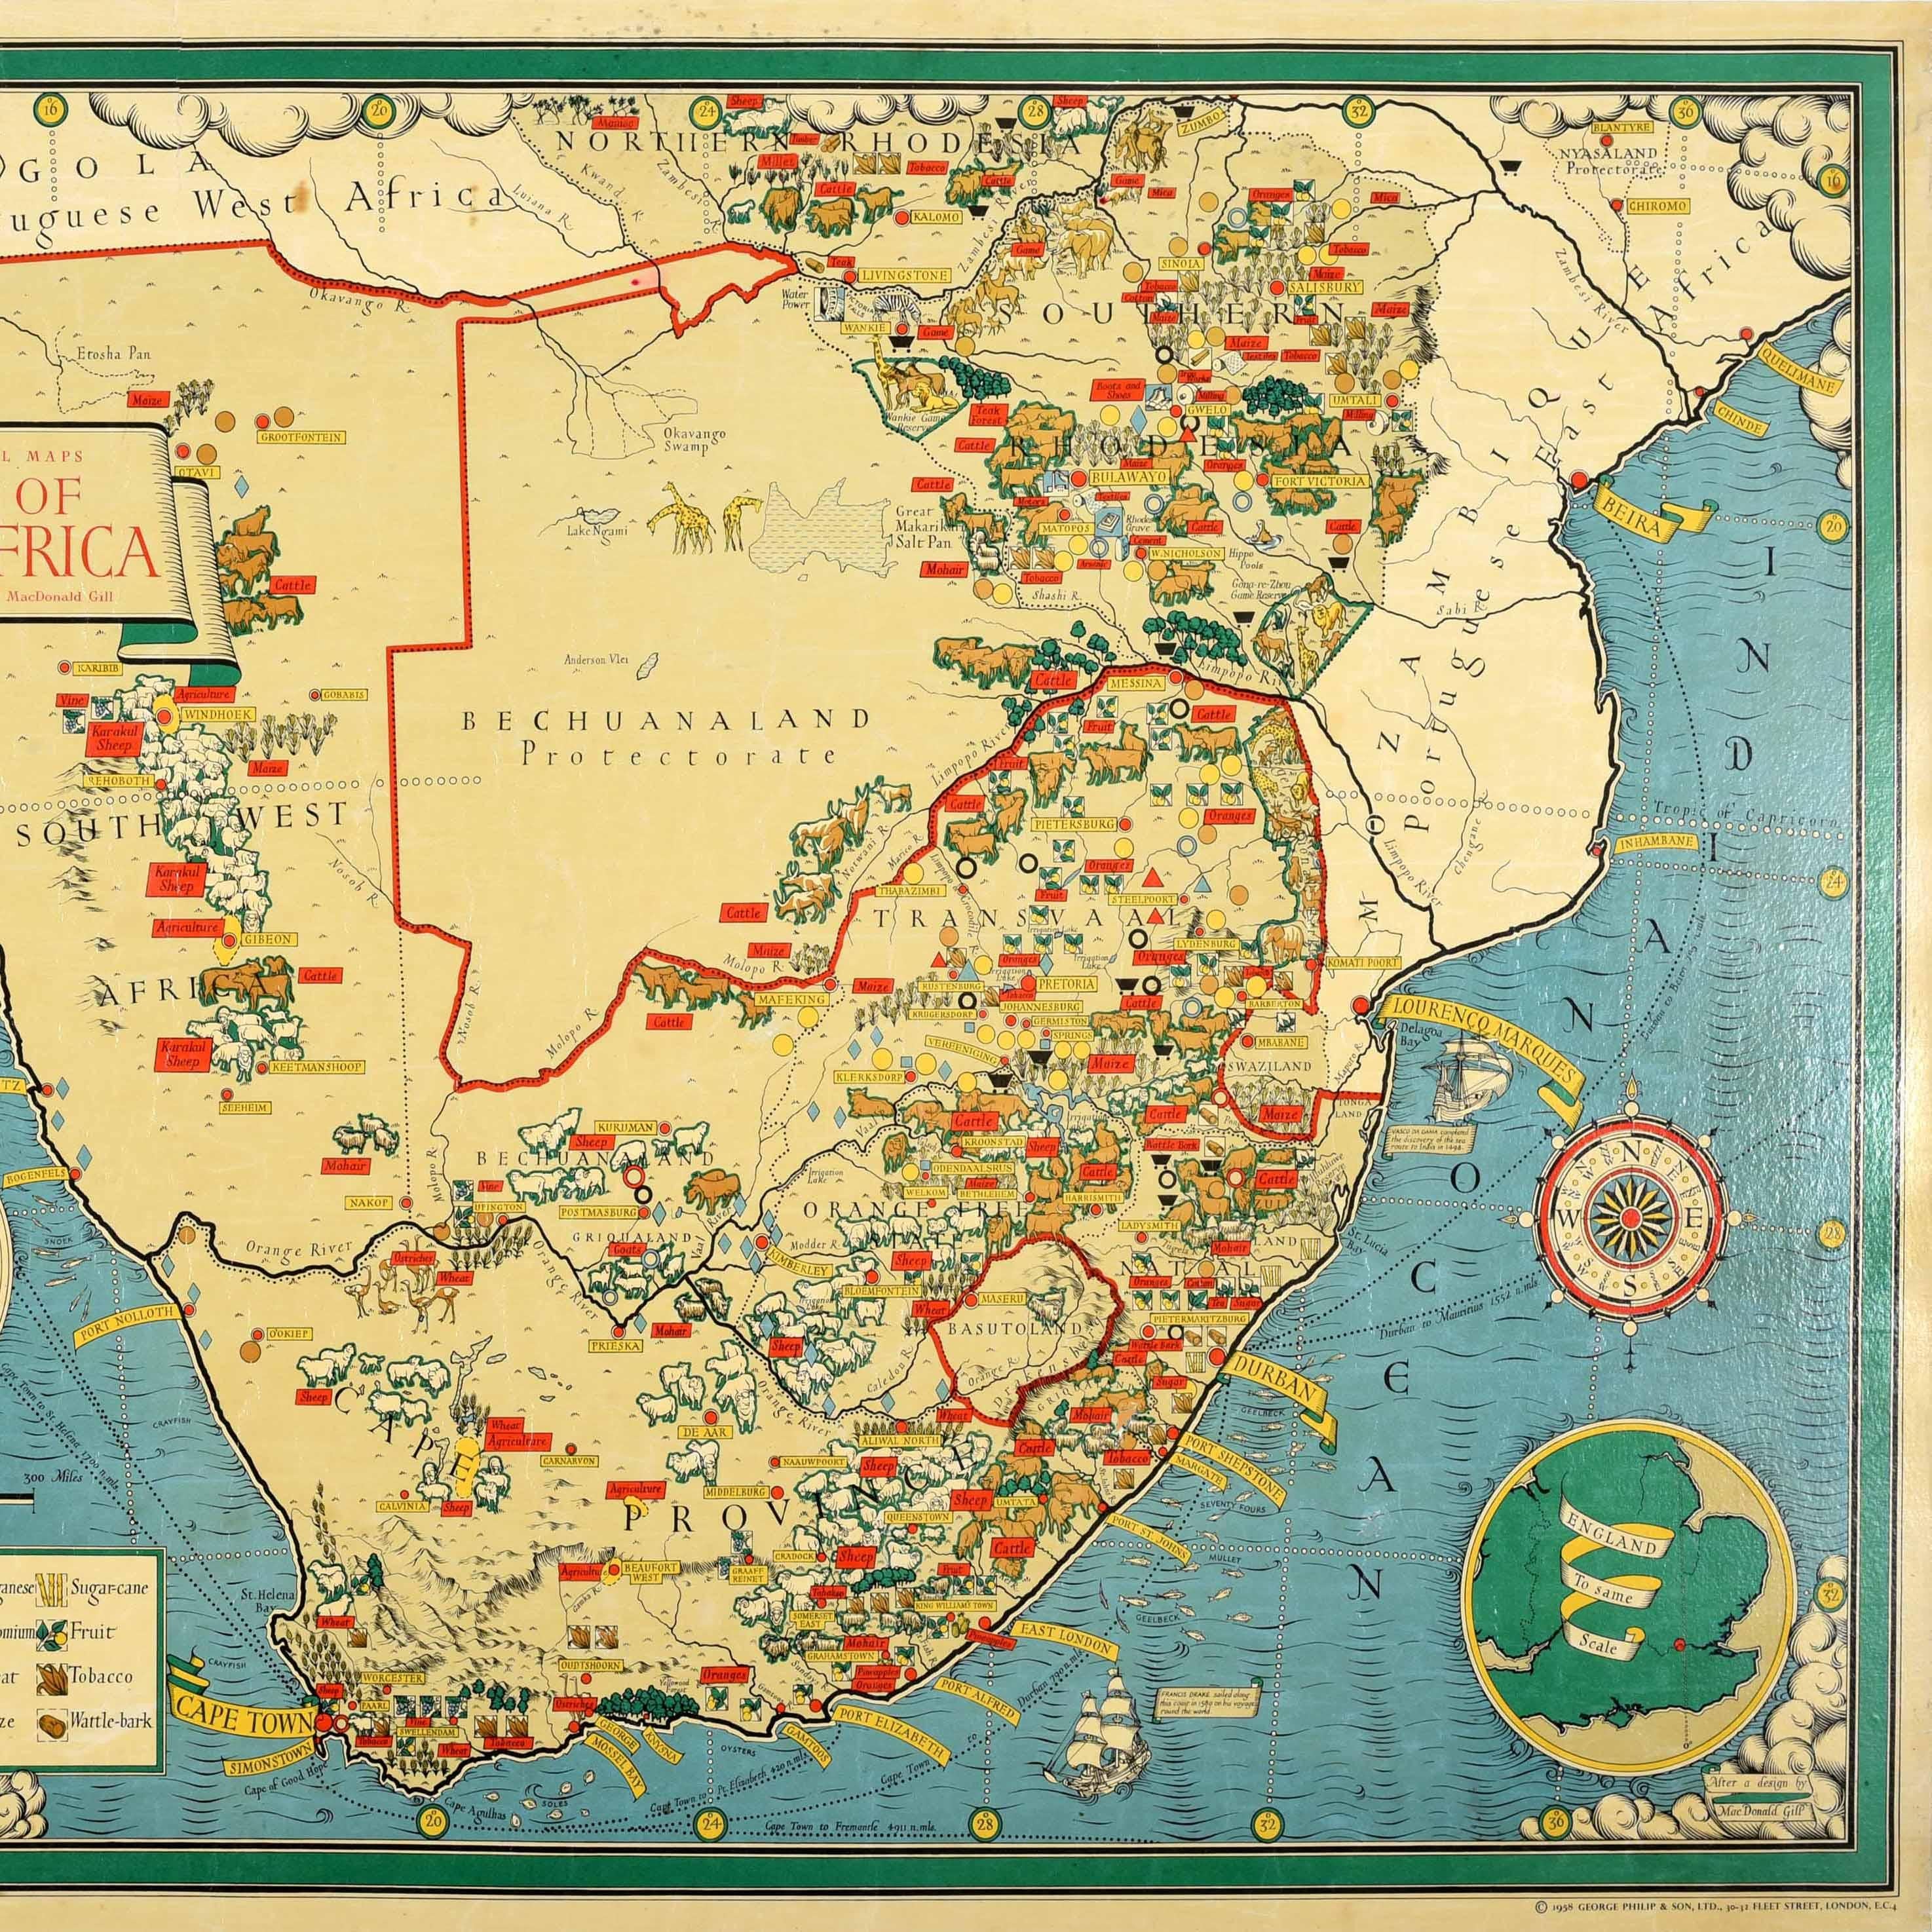 Affiche originale de carte illustrée d'époque pour l'Union d'Afrique du Sud - Carte picturale de Philips basée sur les dessins originaux du célèbre graphiste, cartographe, artiste et architecte britannique Leslie MacDonald Gill (1884-1947) - La